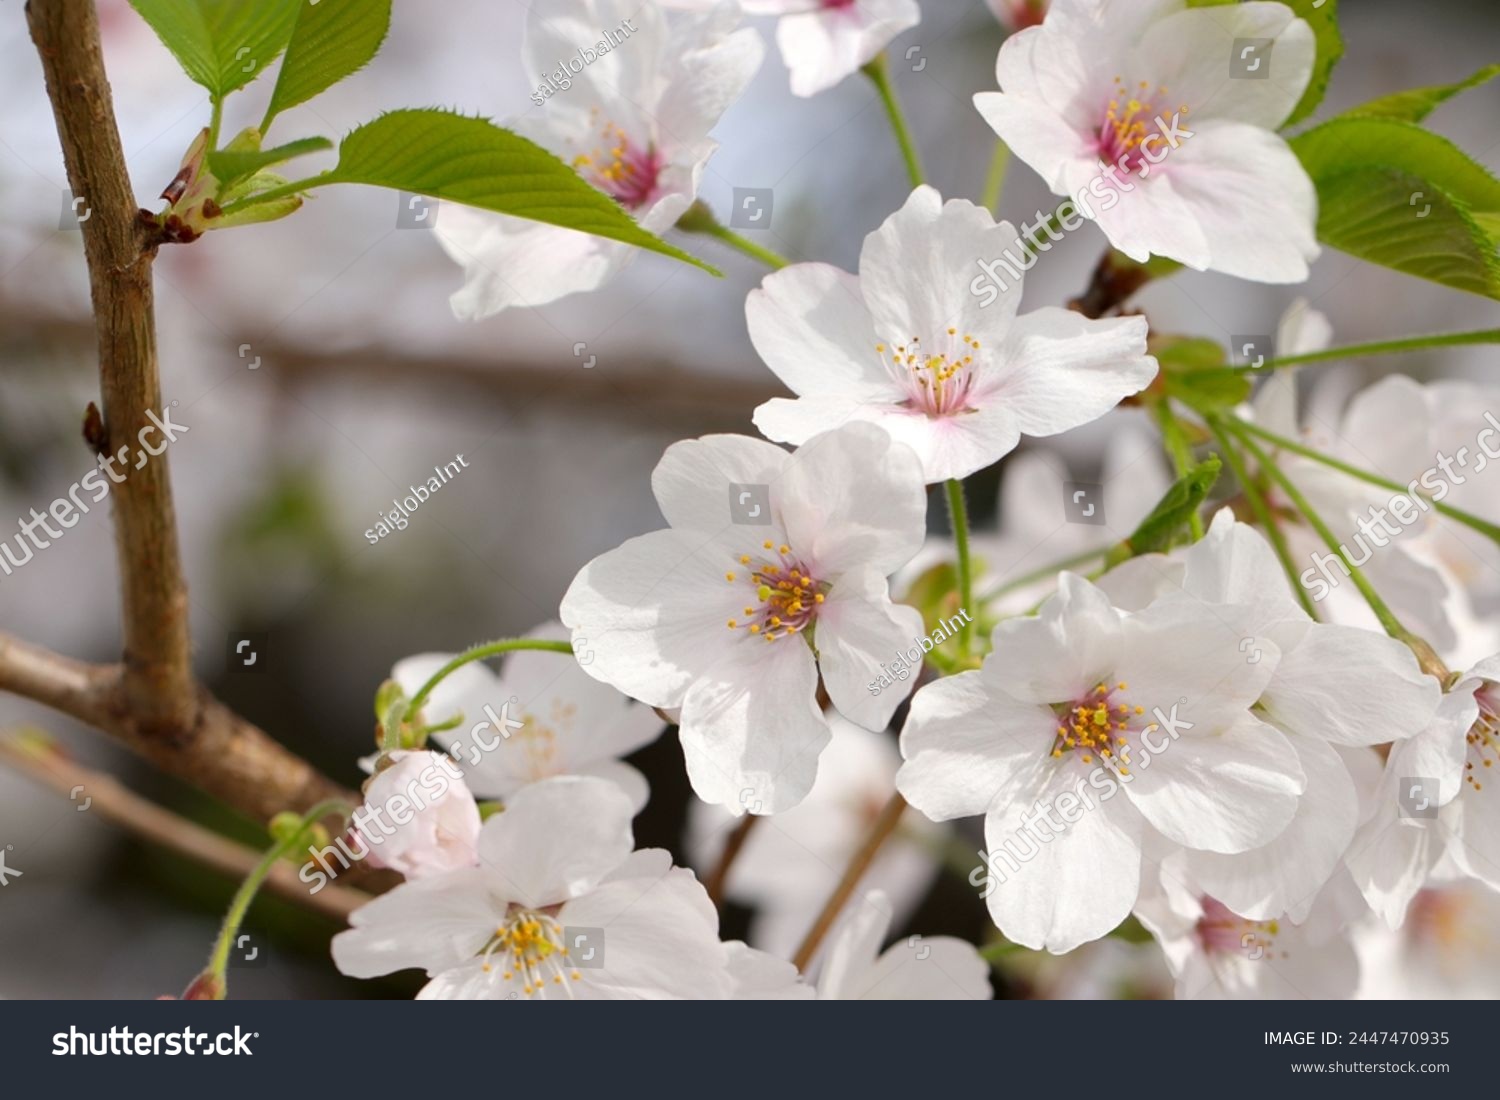 Japanese white Sakura, Someiyoshino cherry blossom full blooming flower branch (Natural+flash light, macro close-up photography) #2447470935